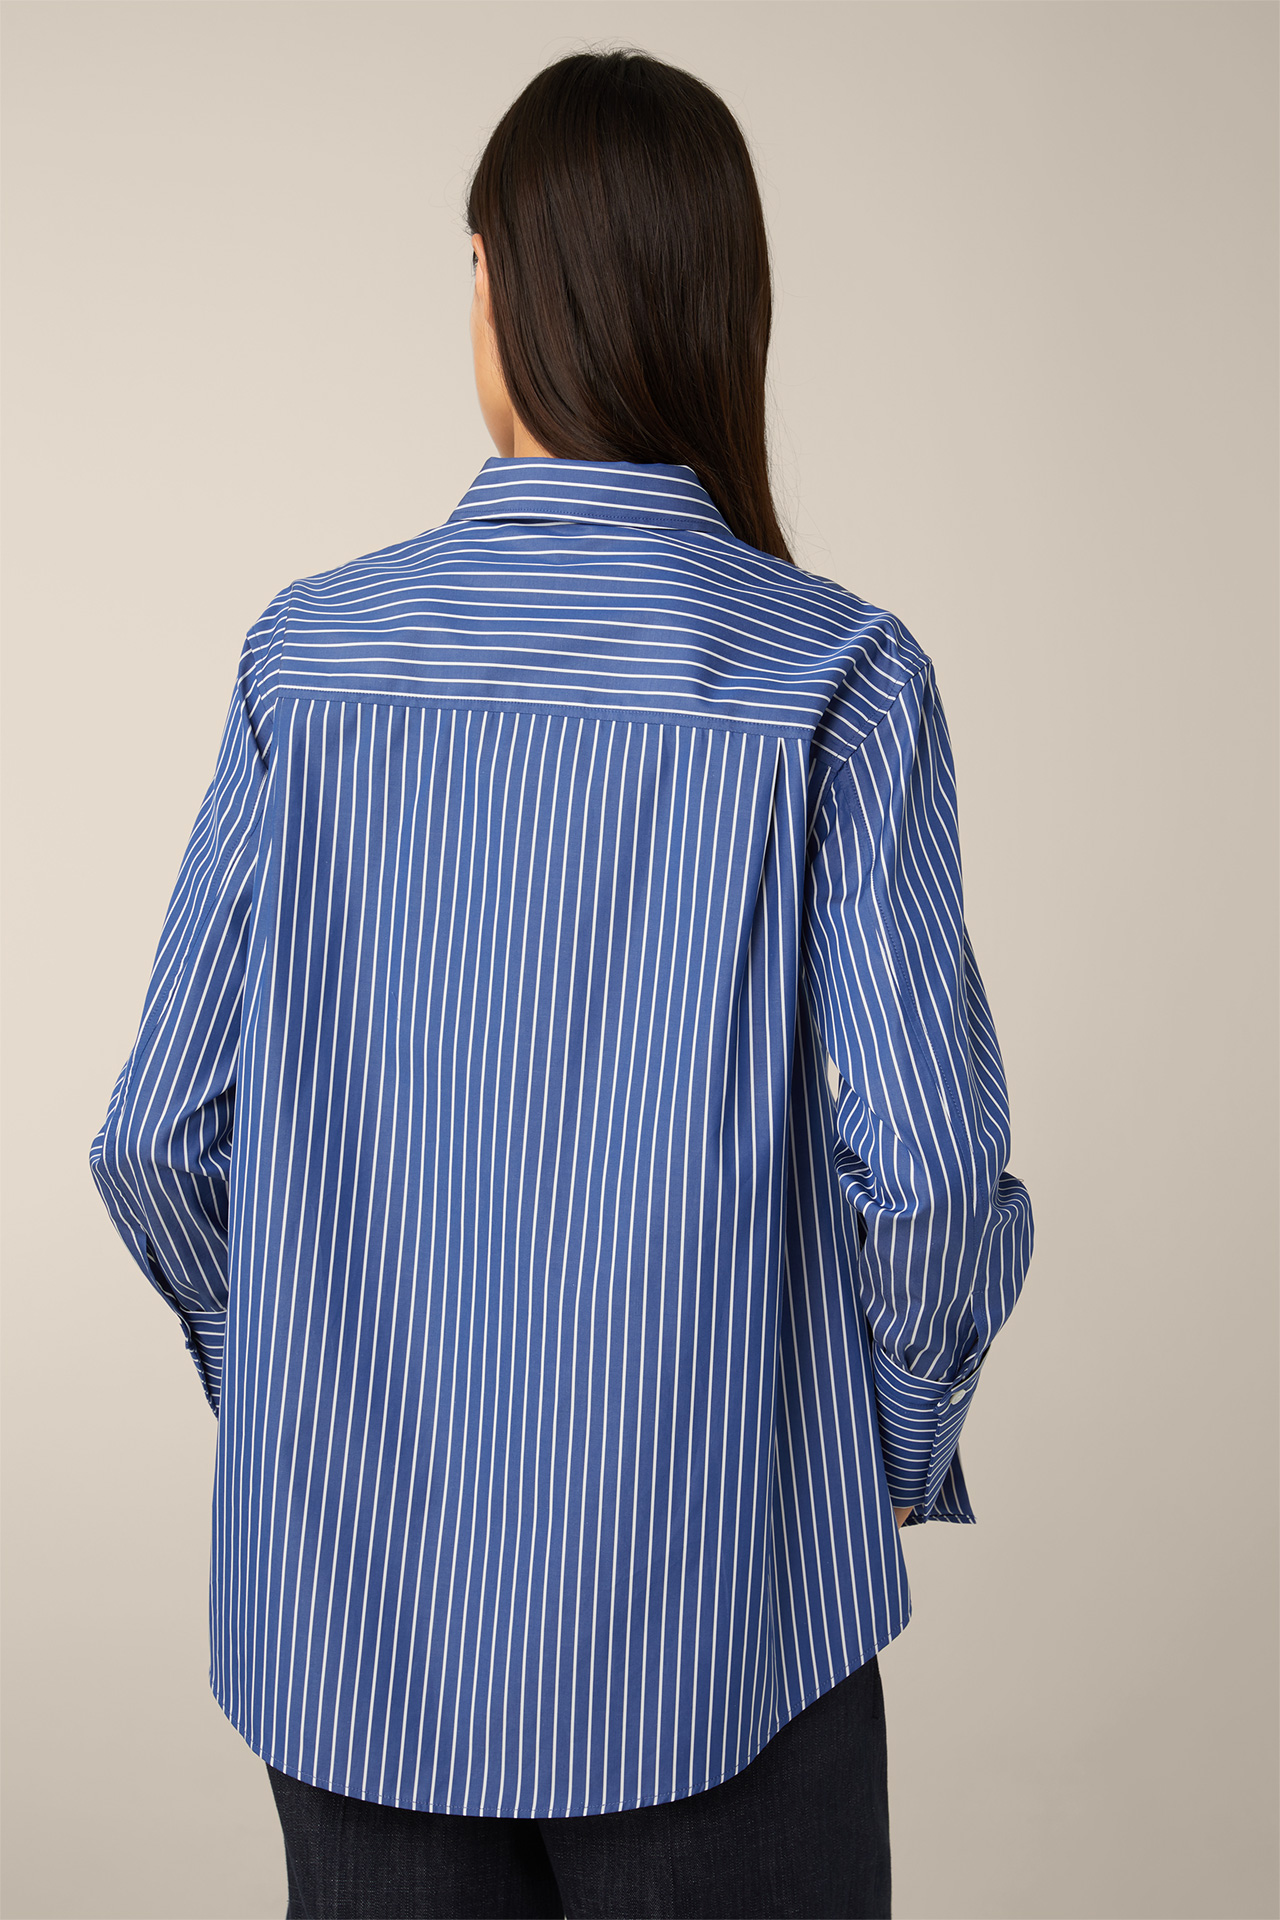 Popeline-Baumwoll-Streifen-Hemd-Bluse in Blau-Weiß gestreift - im windsor.  Online-Shop